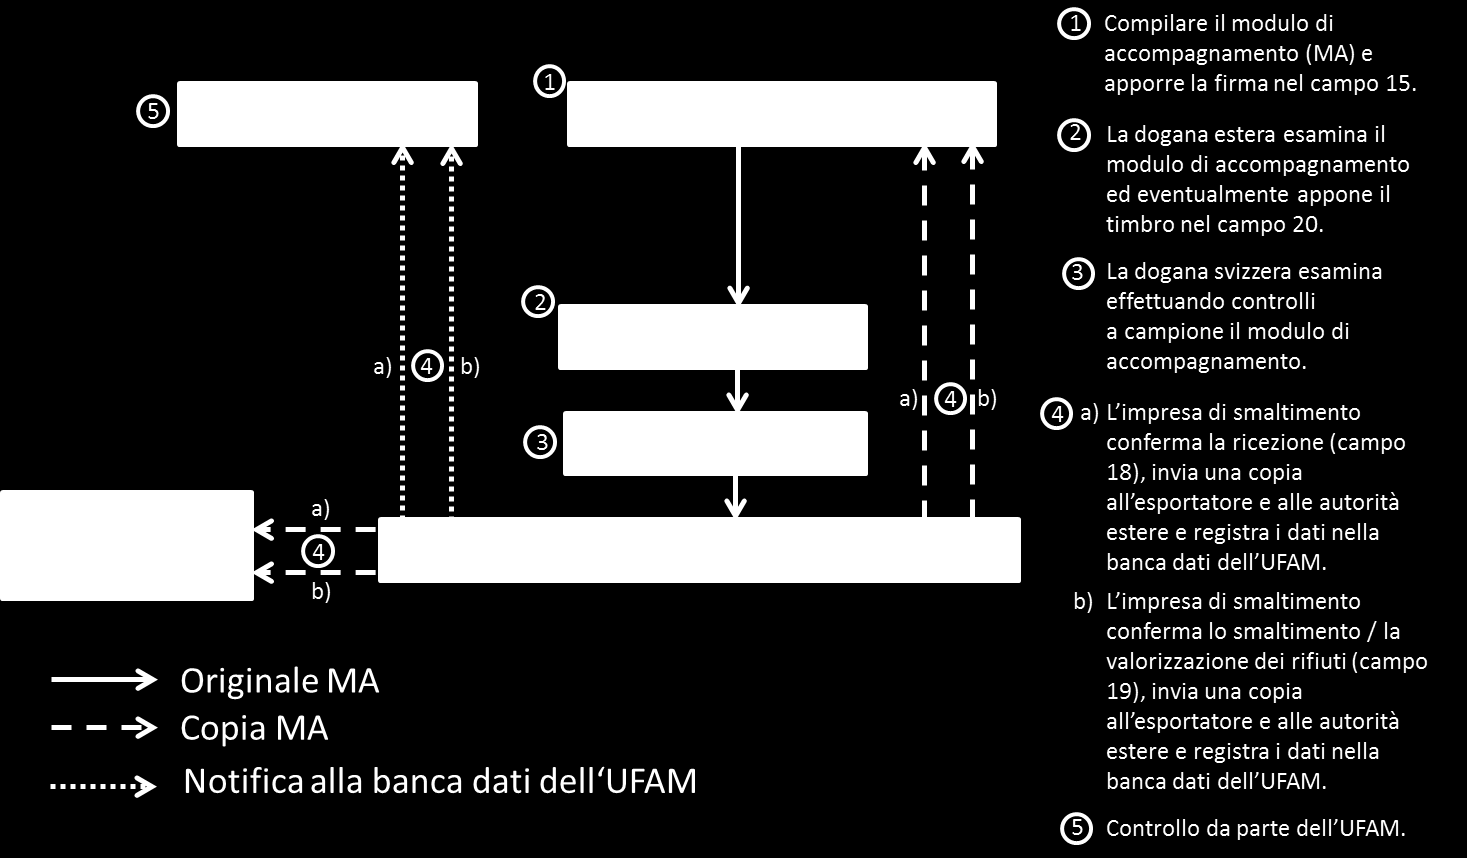 la banca dati dell UFAM 32 (art. 31 cpv. 5 lett. c progetto OTRif).